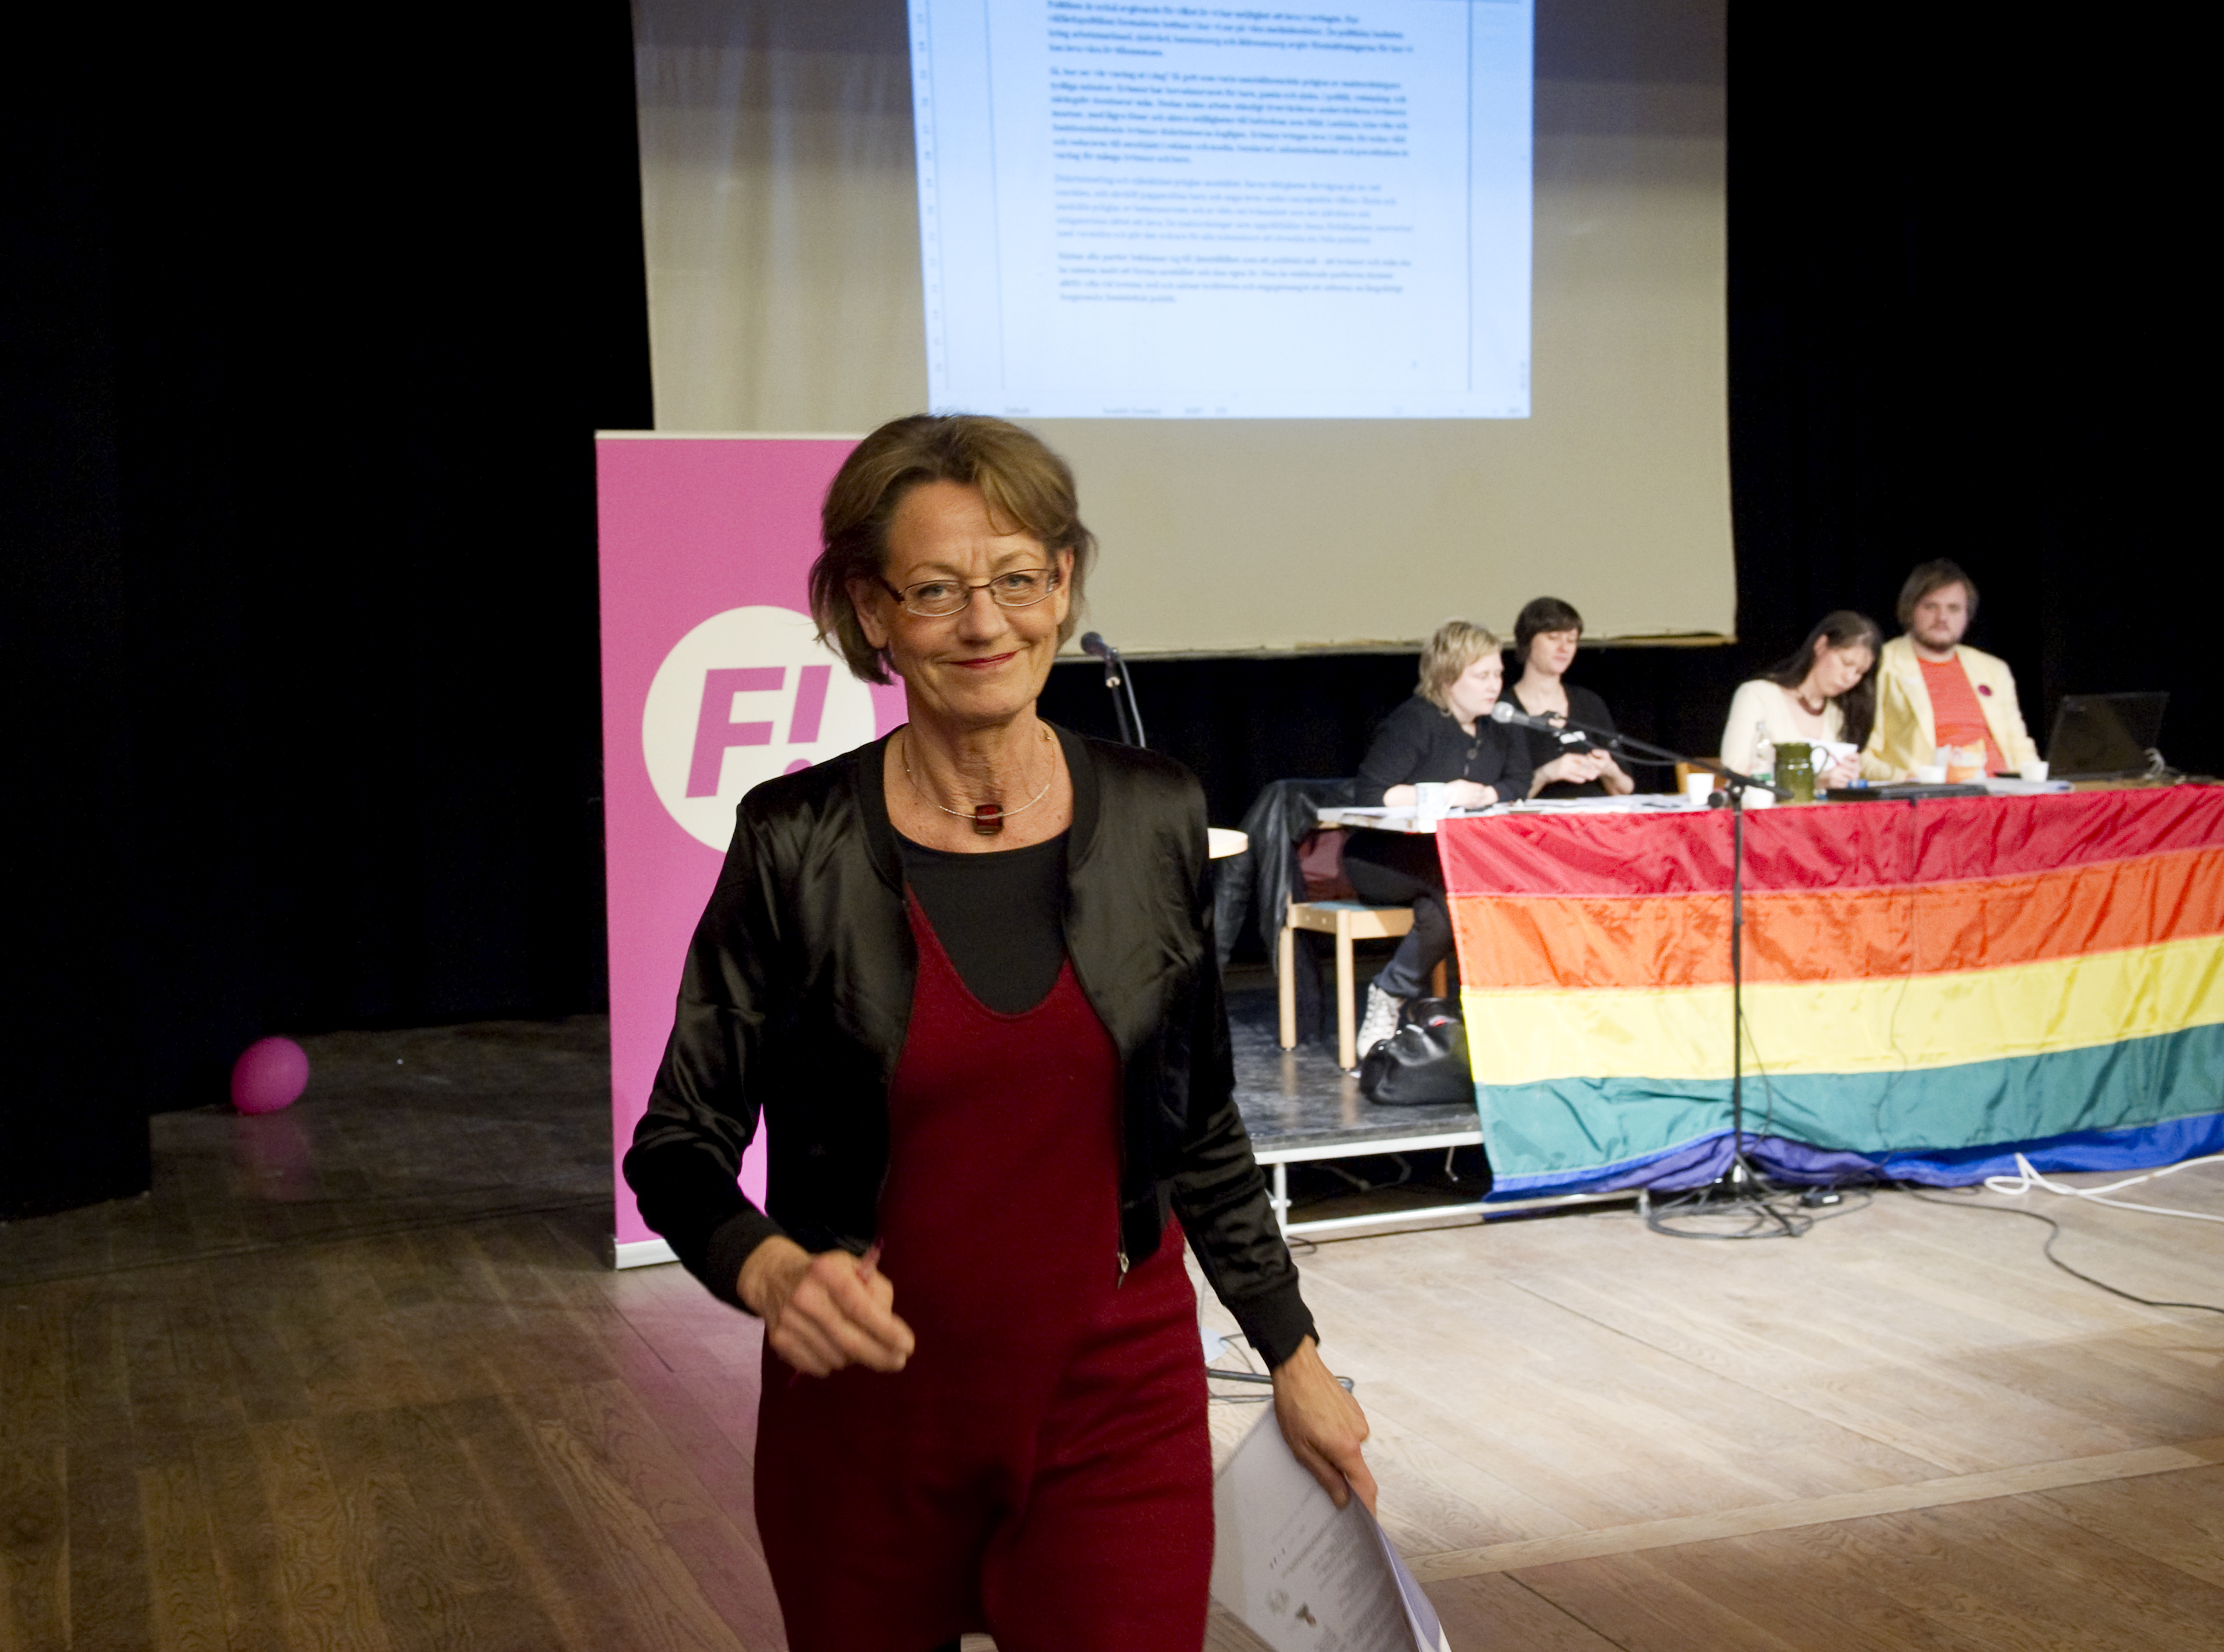 Riksdagsvalet 2010, Feministiskt initiativ, Gudrun Schyman, Arbetsmarknad, Lönediskriminering